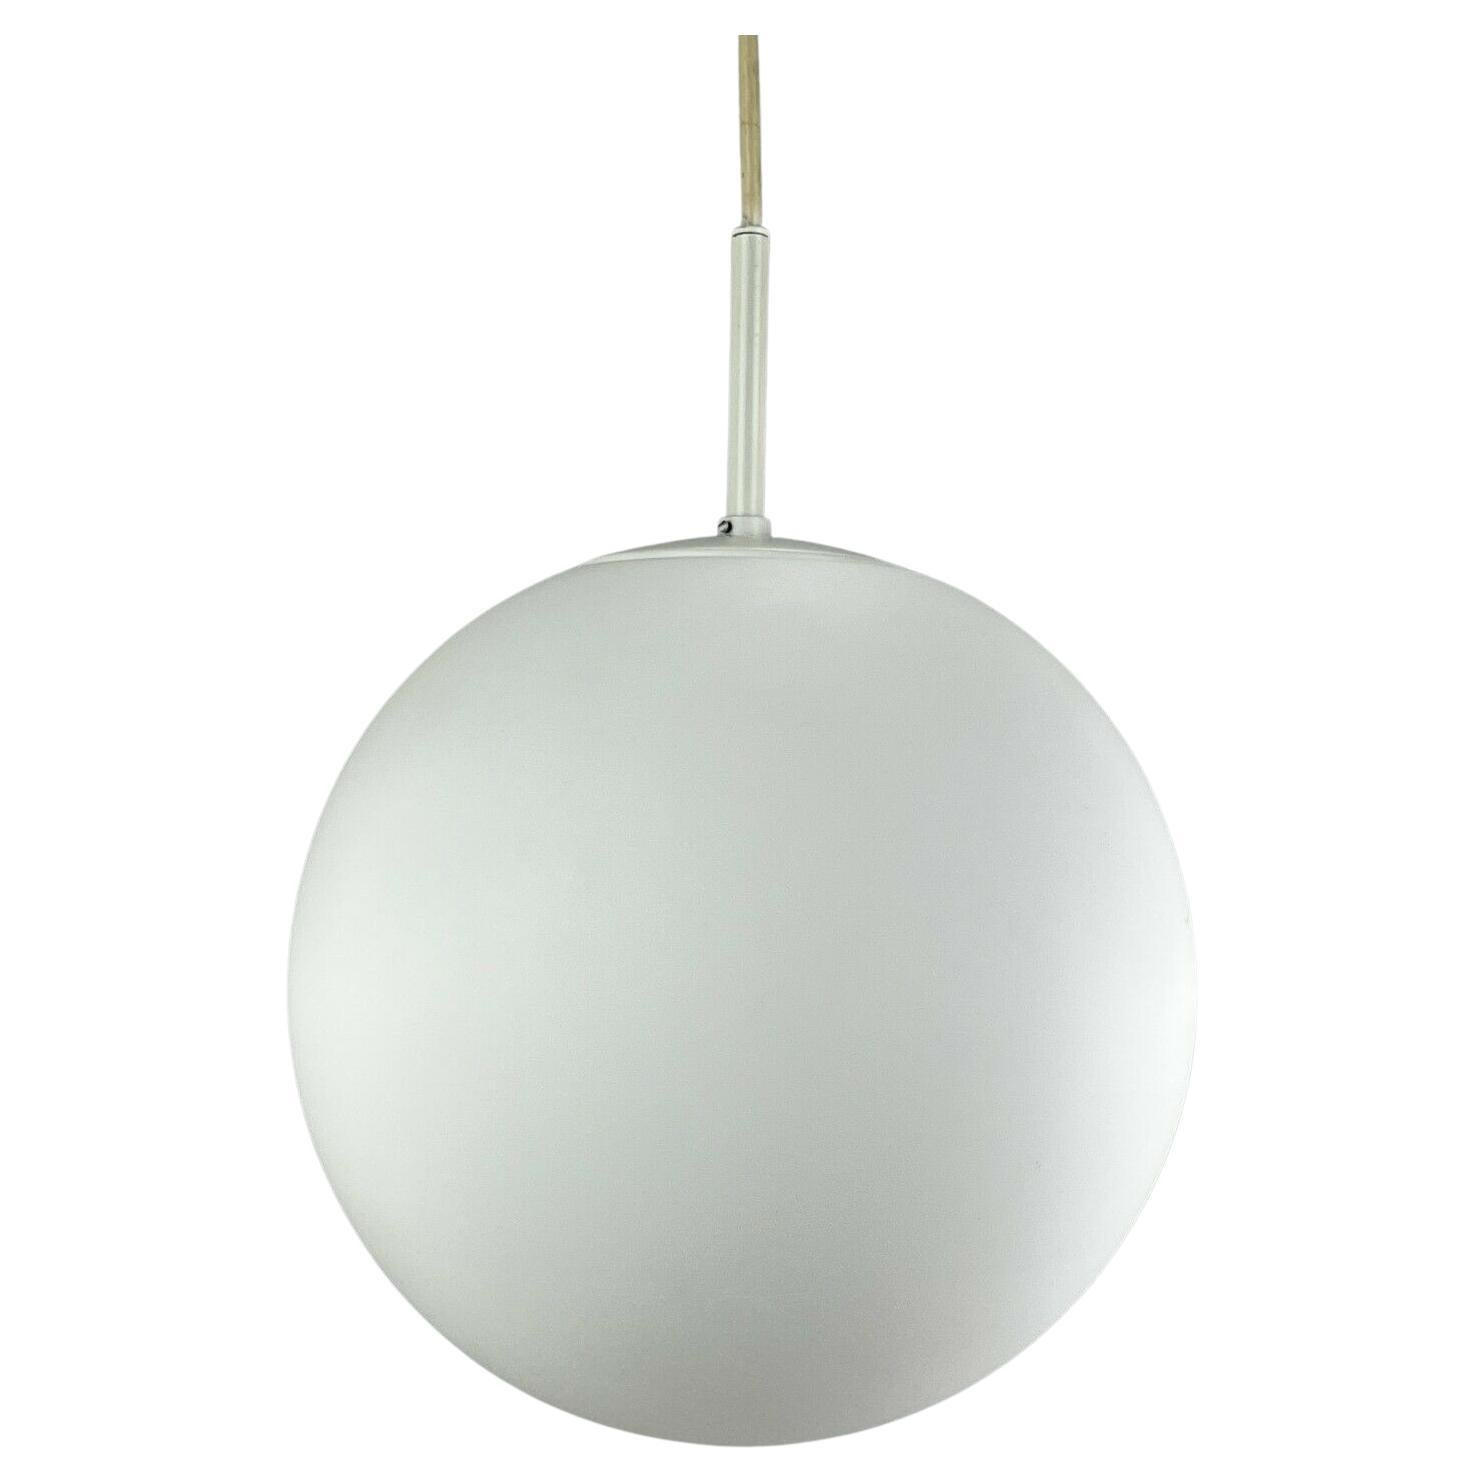 Xxl 60s 70s Lamp Light Ceiling Lamp Limburg Spherical Lamp Ball Design 